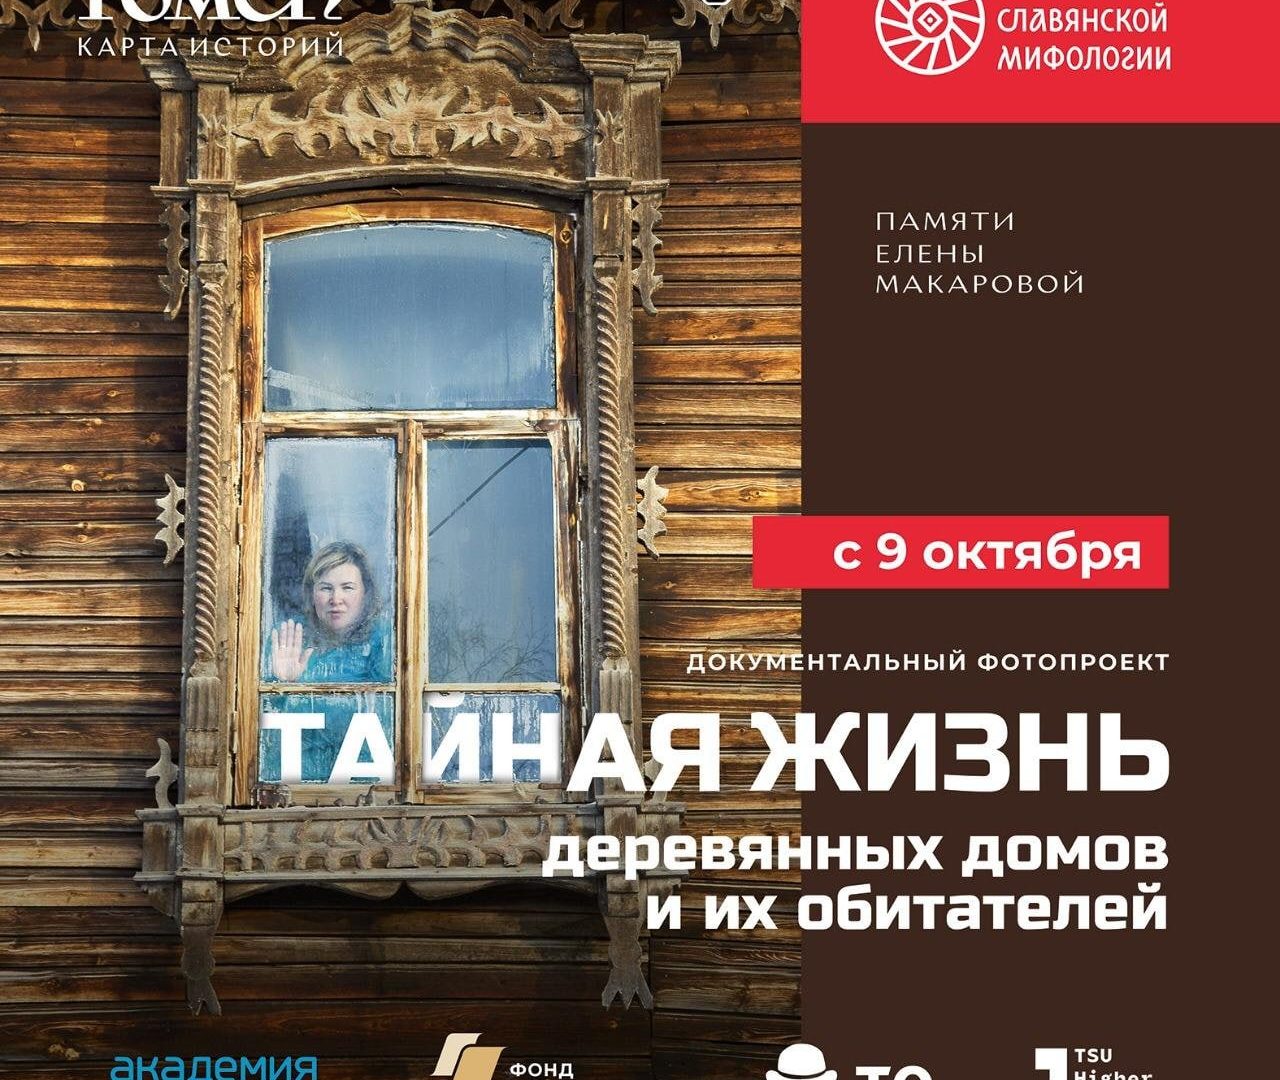 Афиша мероприятий в выходные дни от Первого музея славянской мифологии